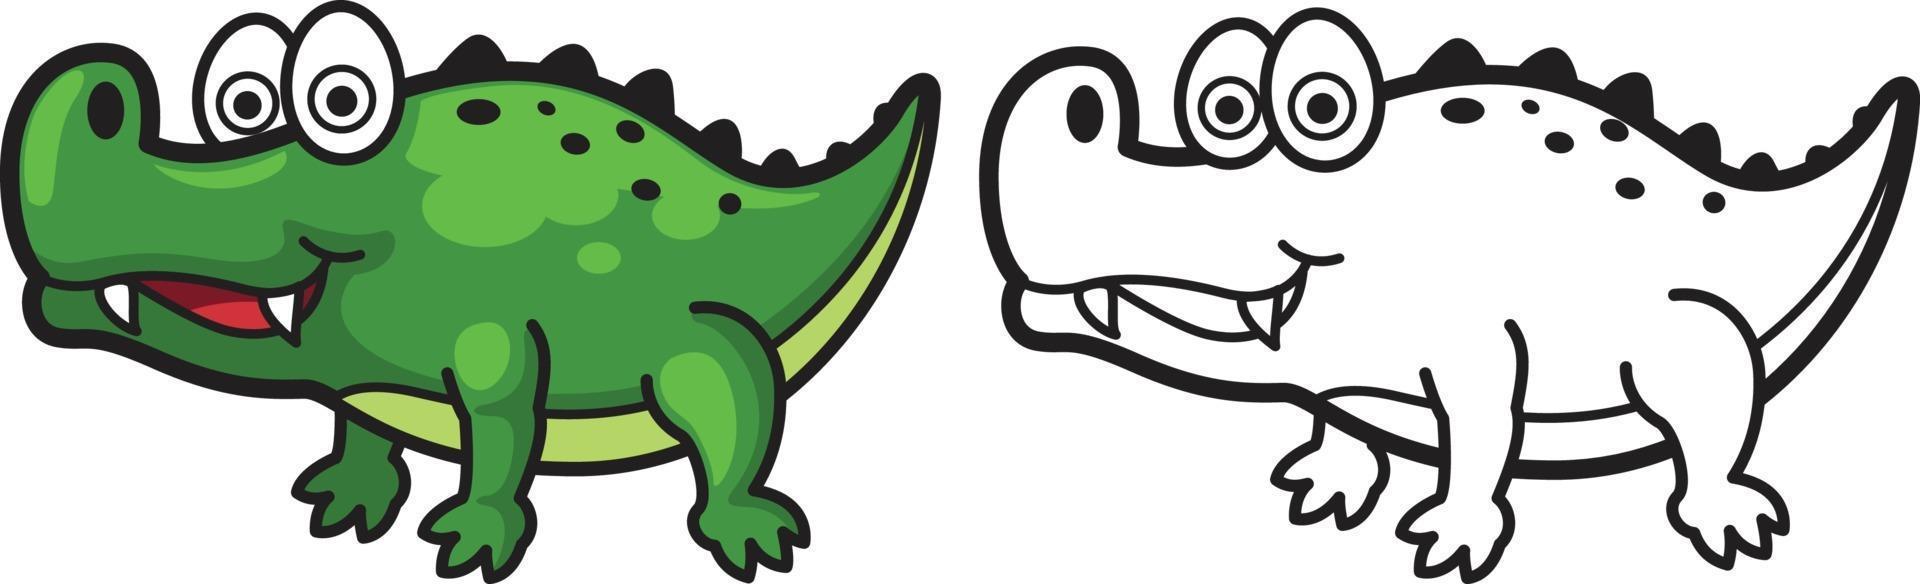 kleurrijke en zwart-witte alligator voor kleurboek vector